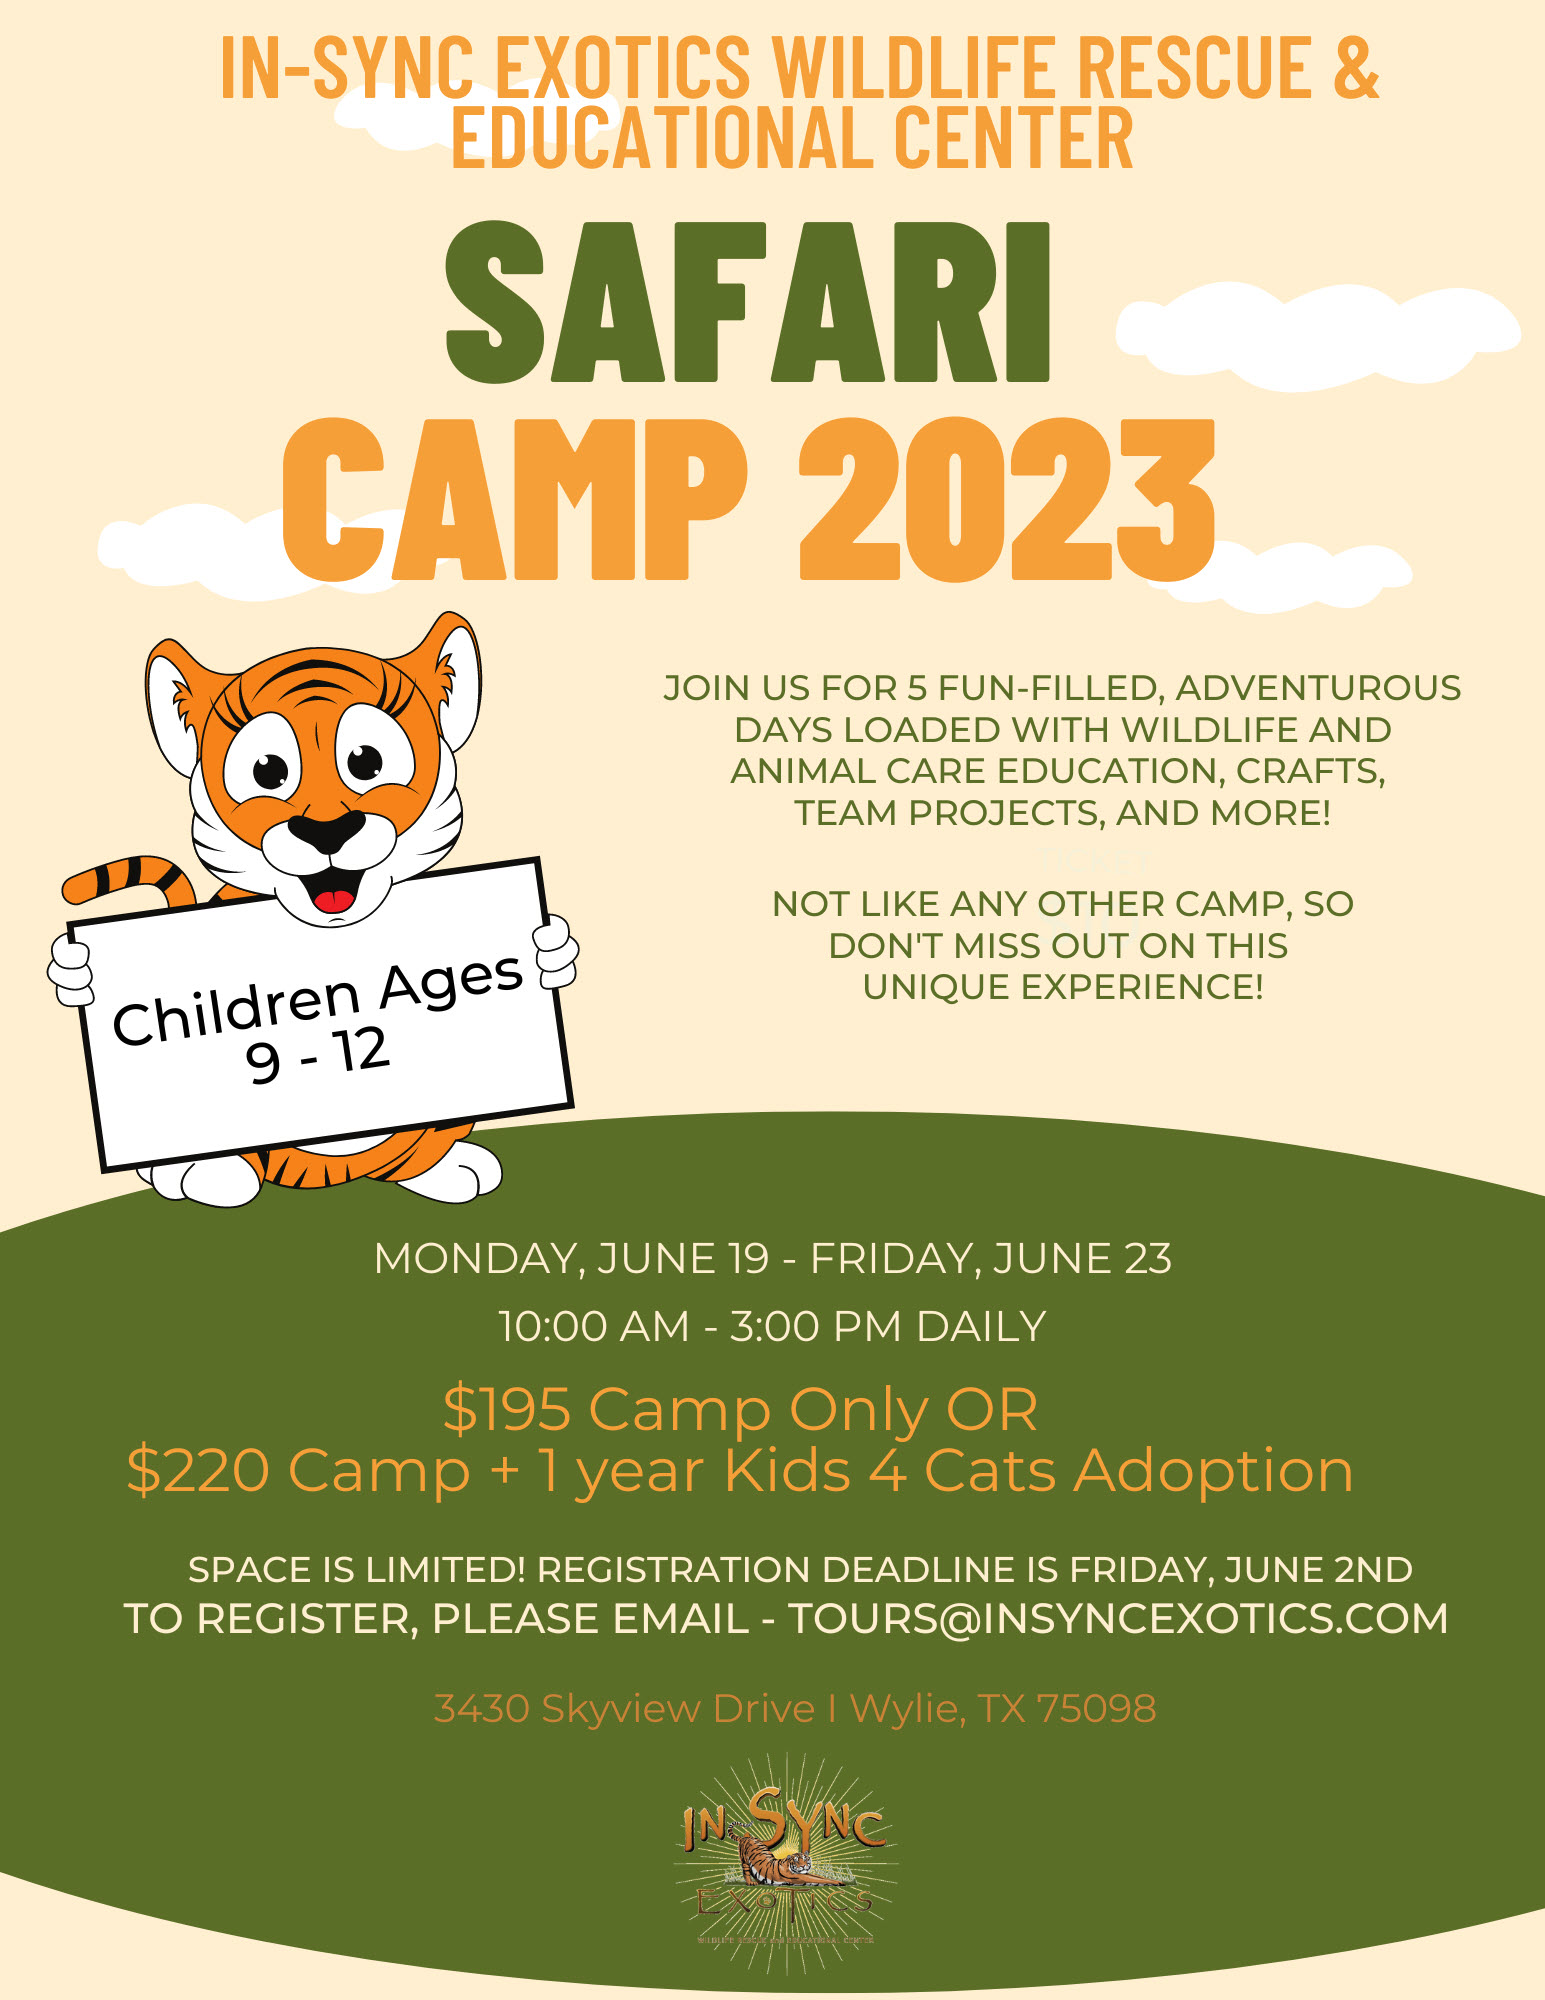 Safari Camp 2023 June 19-June 23